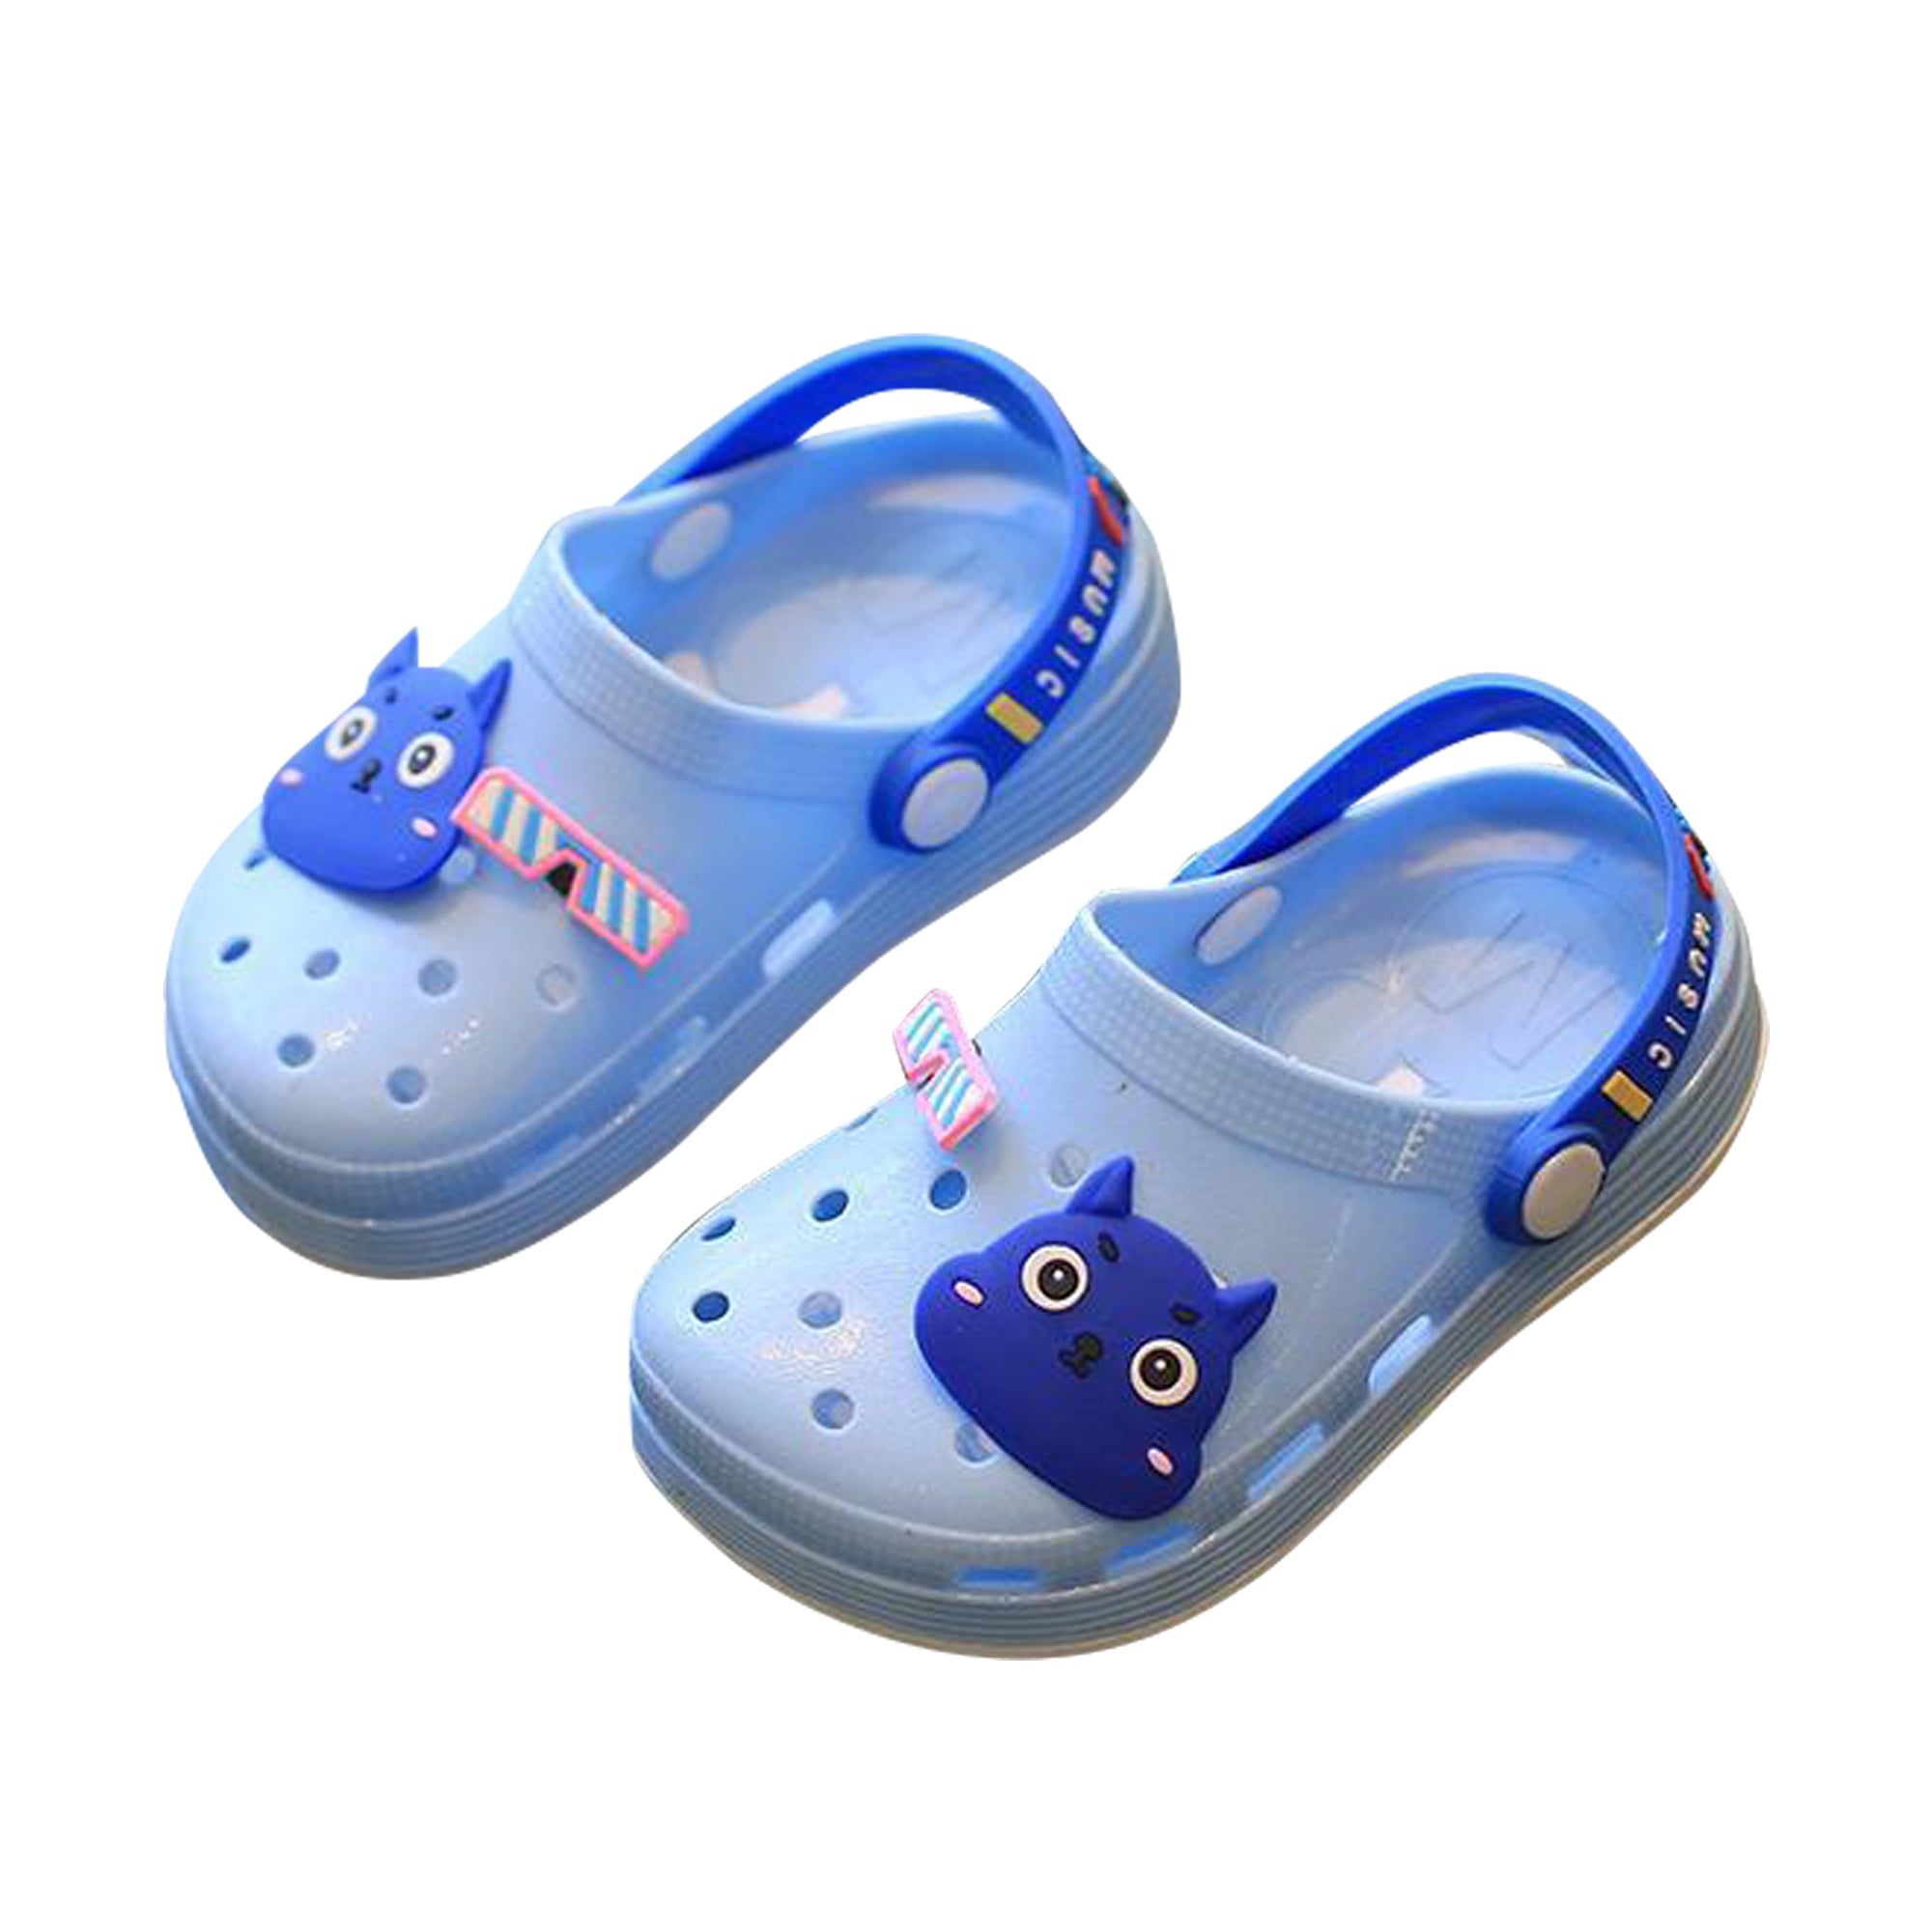 Unisex Children Cute Shoes Cartoon Slides Sandals Clogs Girls Boys Beach Slipper 